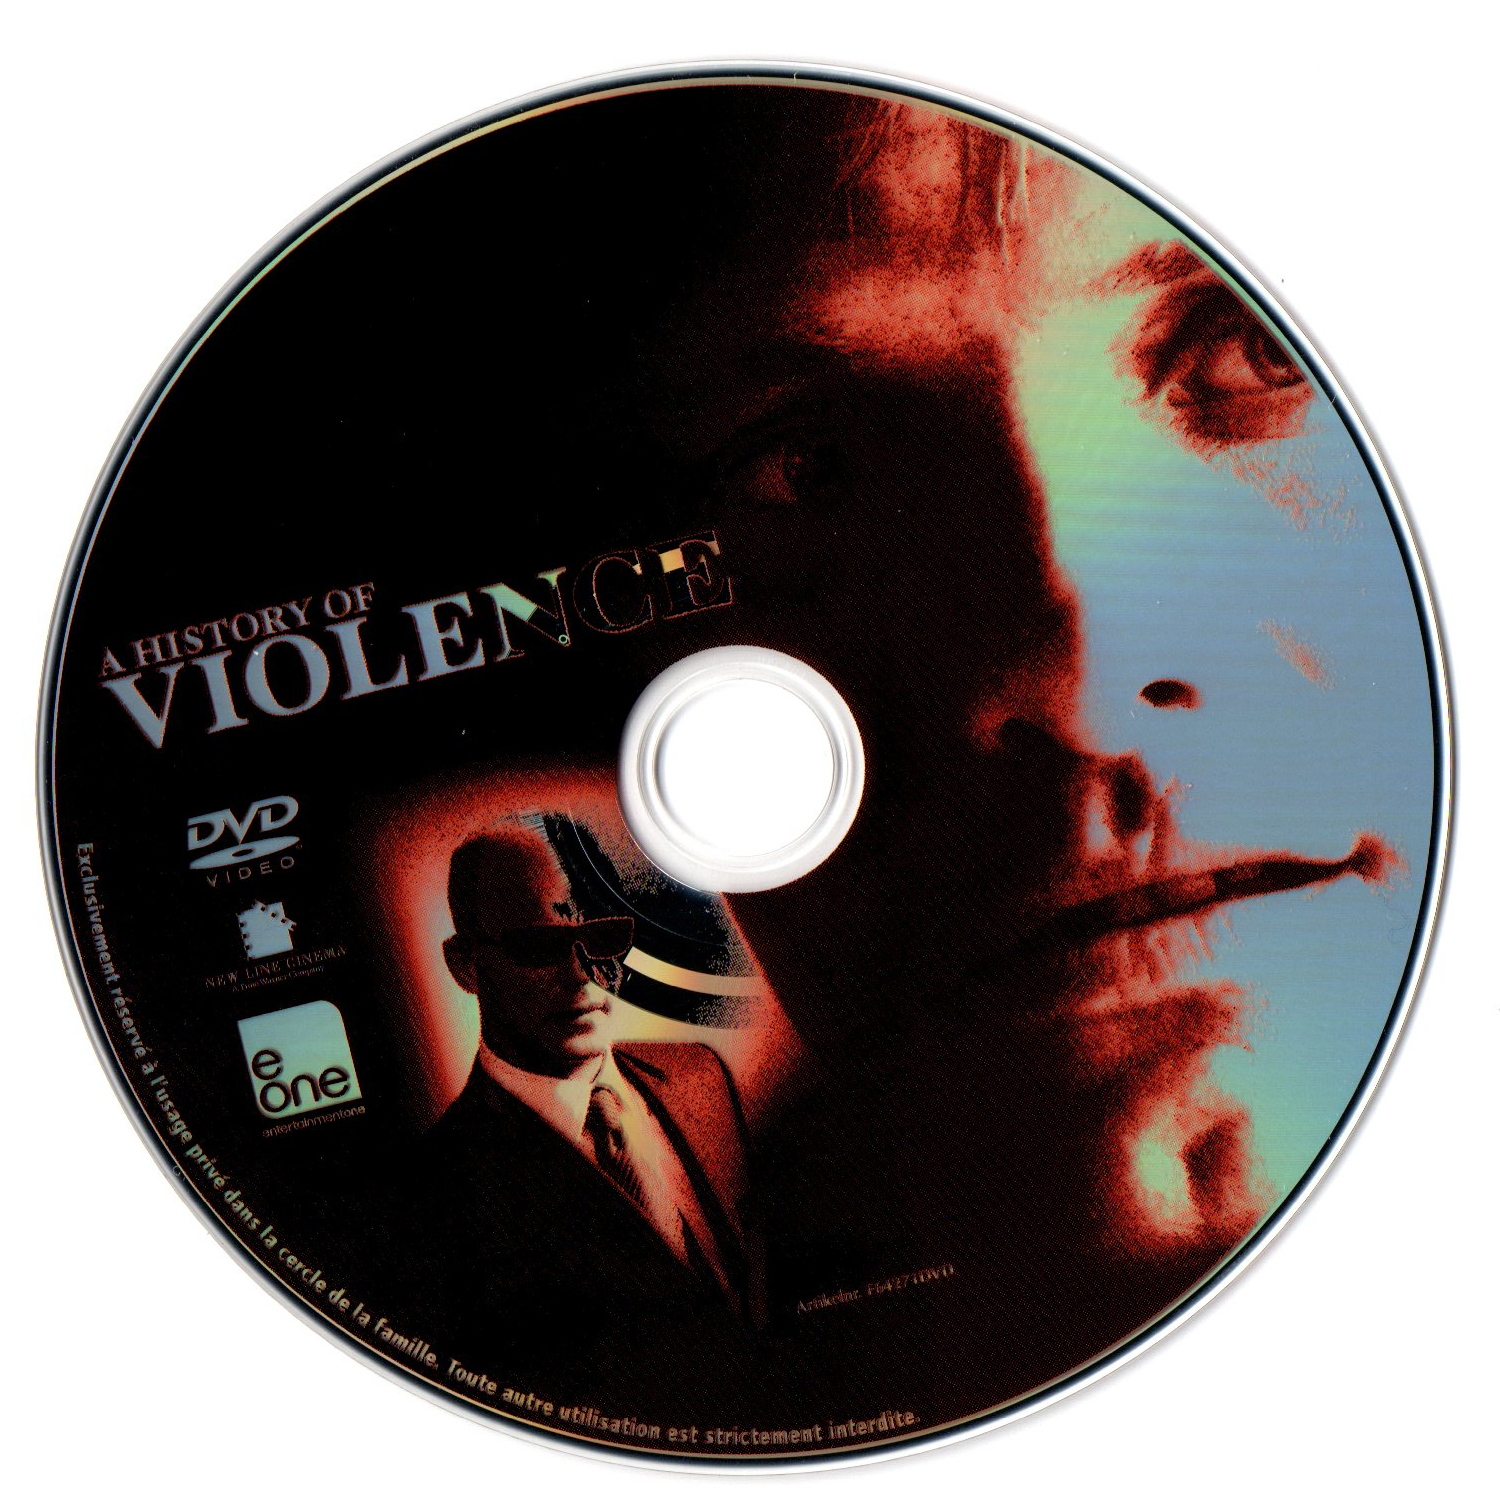 A history of violence v2